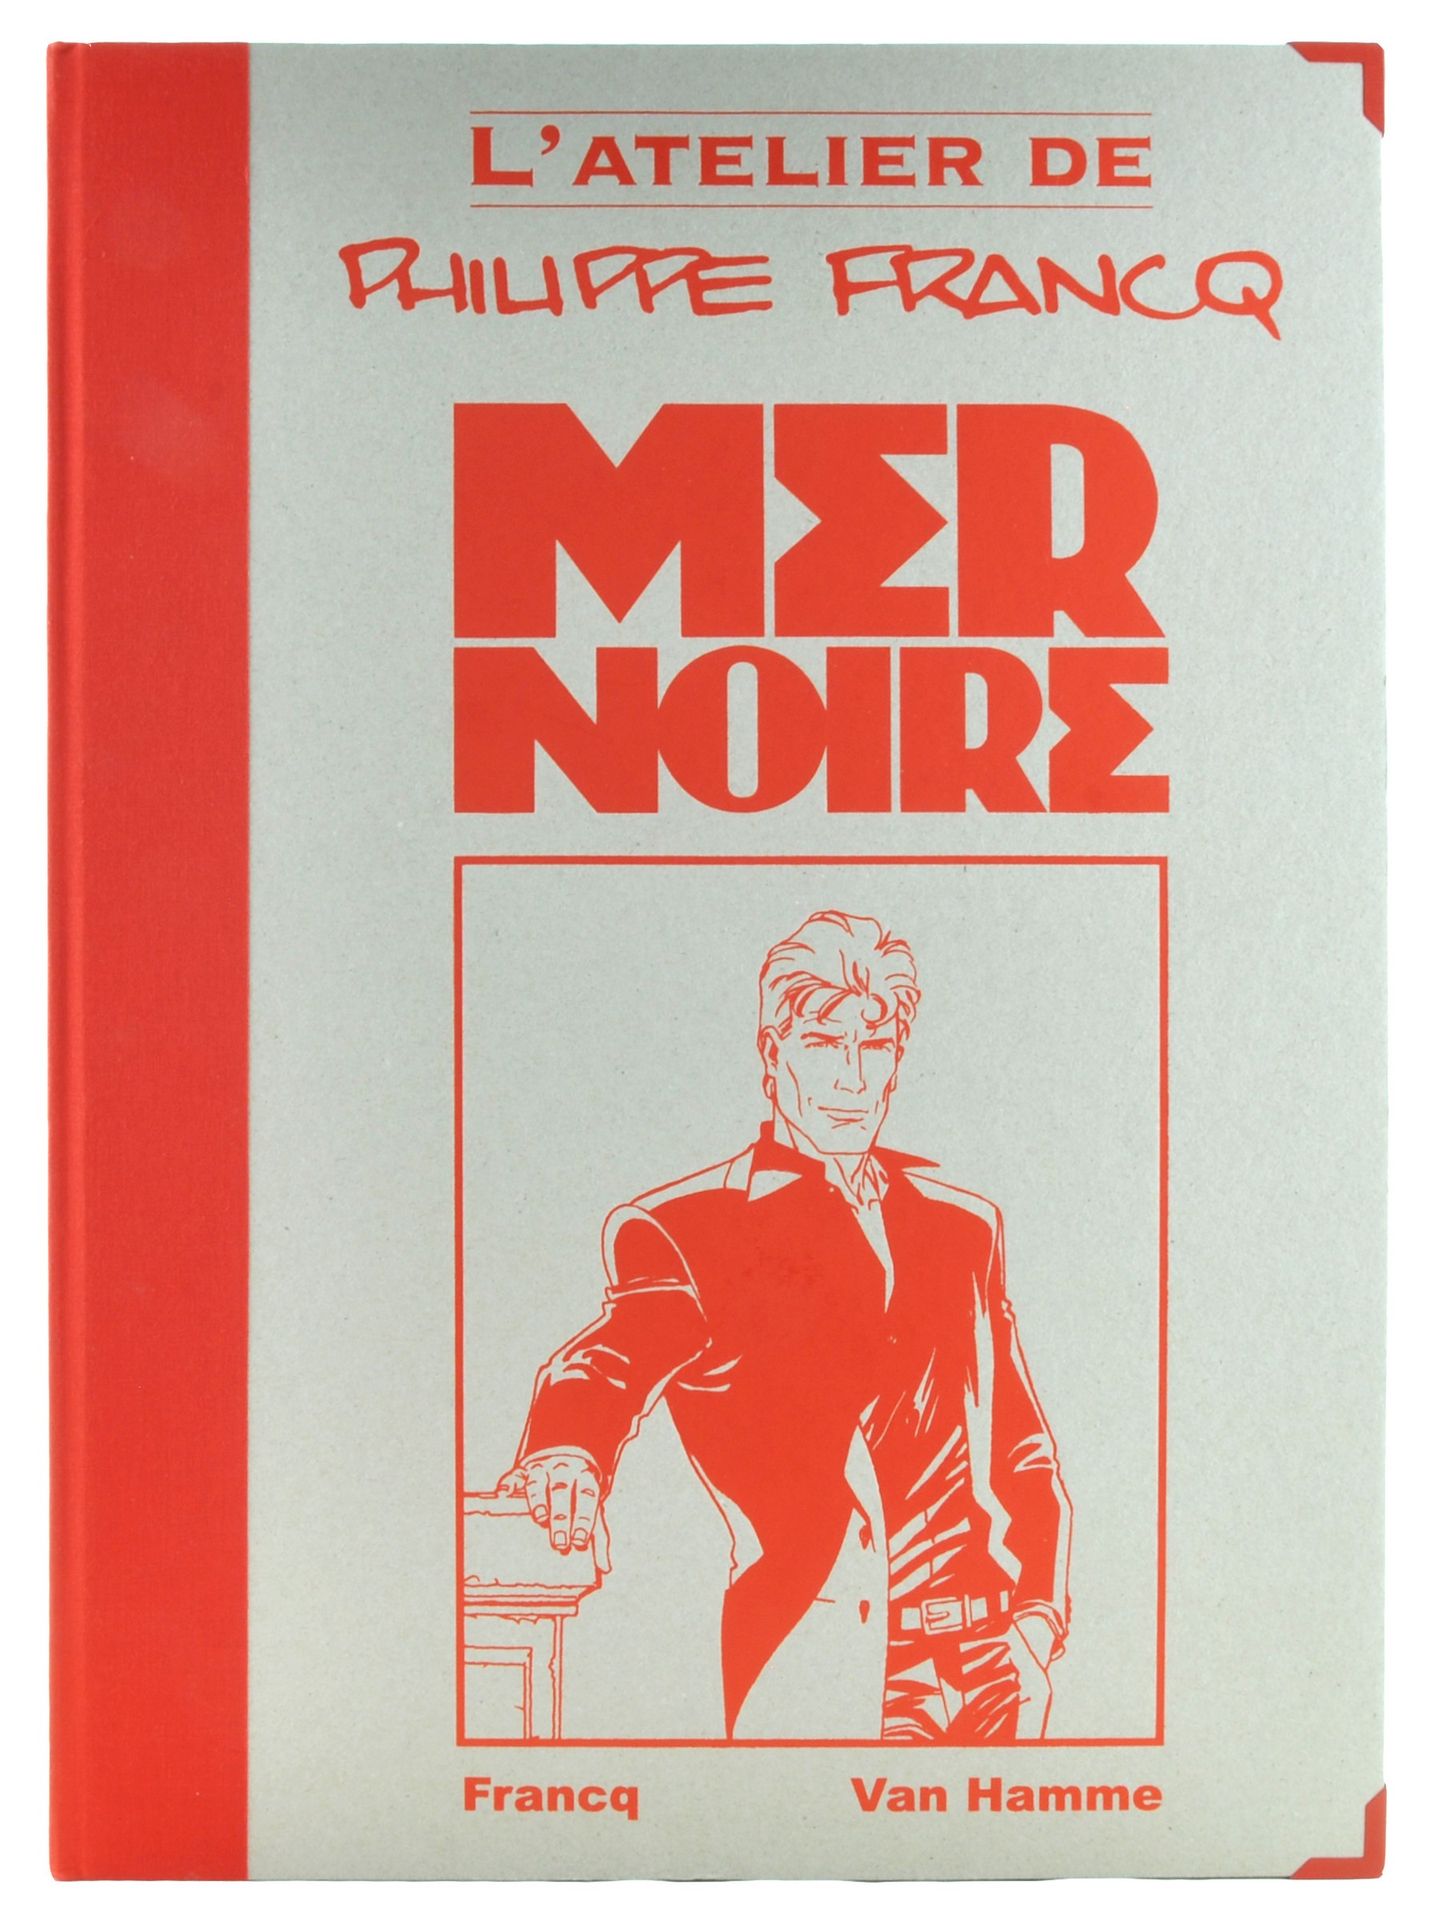 FRANCQ Das Atelier von Philippe Francq. Erste Auflage 150 Exemplare, N°/S. Einba&hellip;